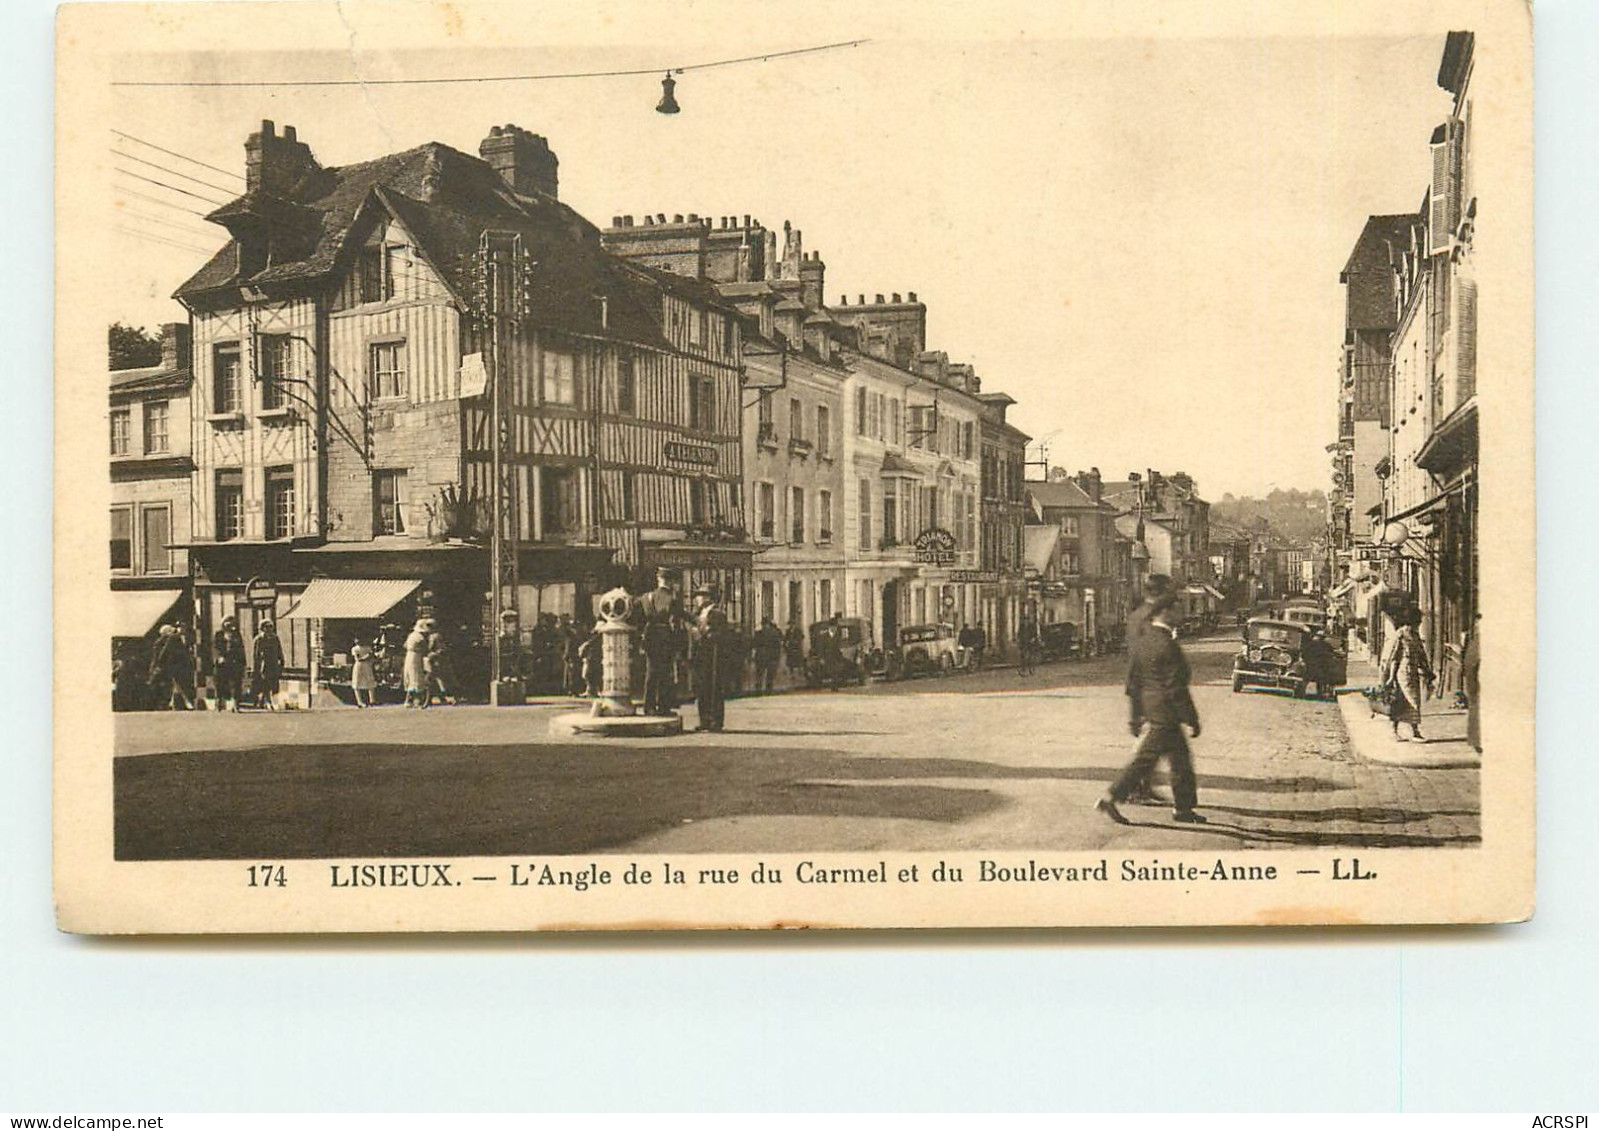 LISIEUX L'angle De La Rue Du Carmel Et St Anne SS 1344 - Lisieux